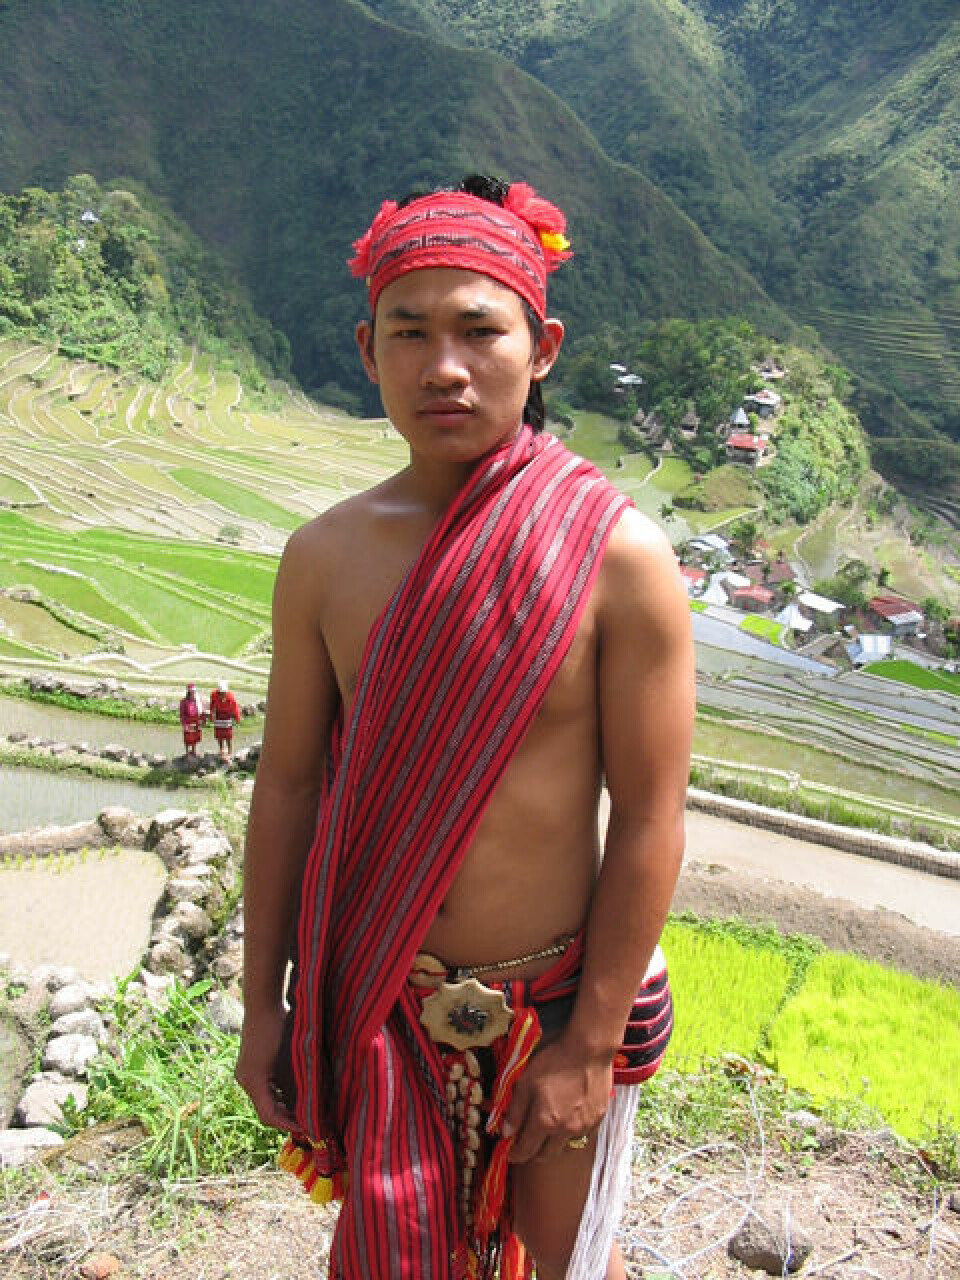 Ifugao gutt kledd i tradisjonelle klær, Banaue. (Foto: Jon Henrik Remme)